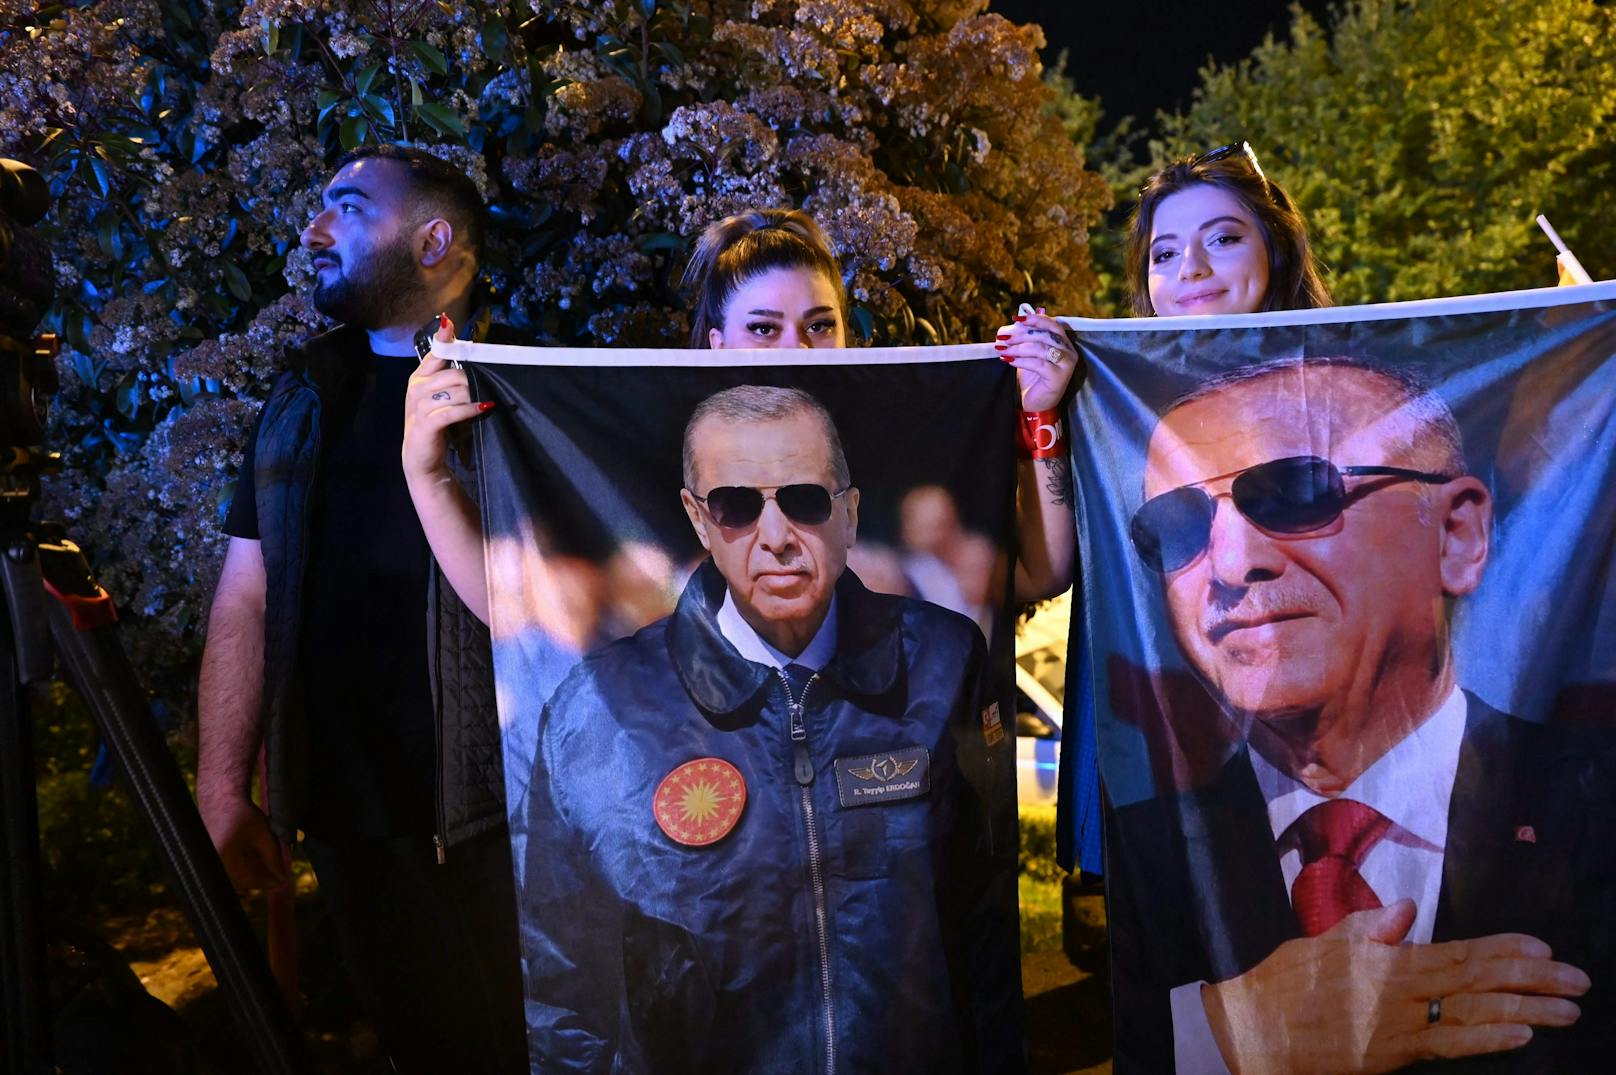 Das Rennen um das Präsidentenamt zwischen Amtsinhaber Erdogan und seinem Herausforderer Kilicdaroglu war knapp – und geht wohl in eine zweite Runde. Für Erdogan ist das Ergebnis ein Rückschlag. Aber auch die Opposition blieb unter ihren Erwartungen.